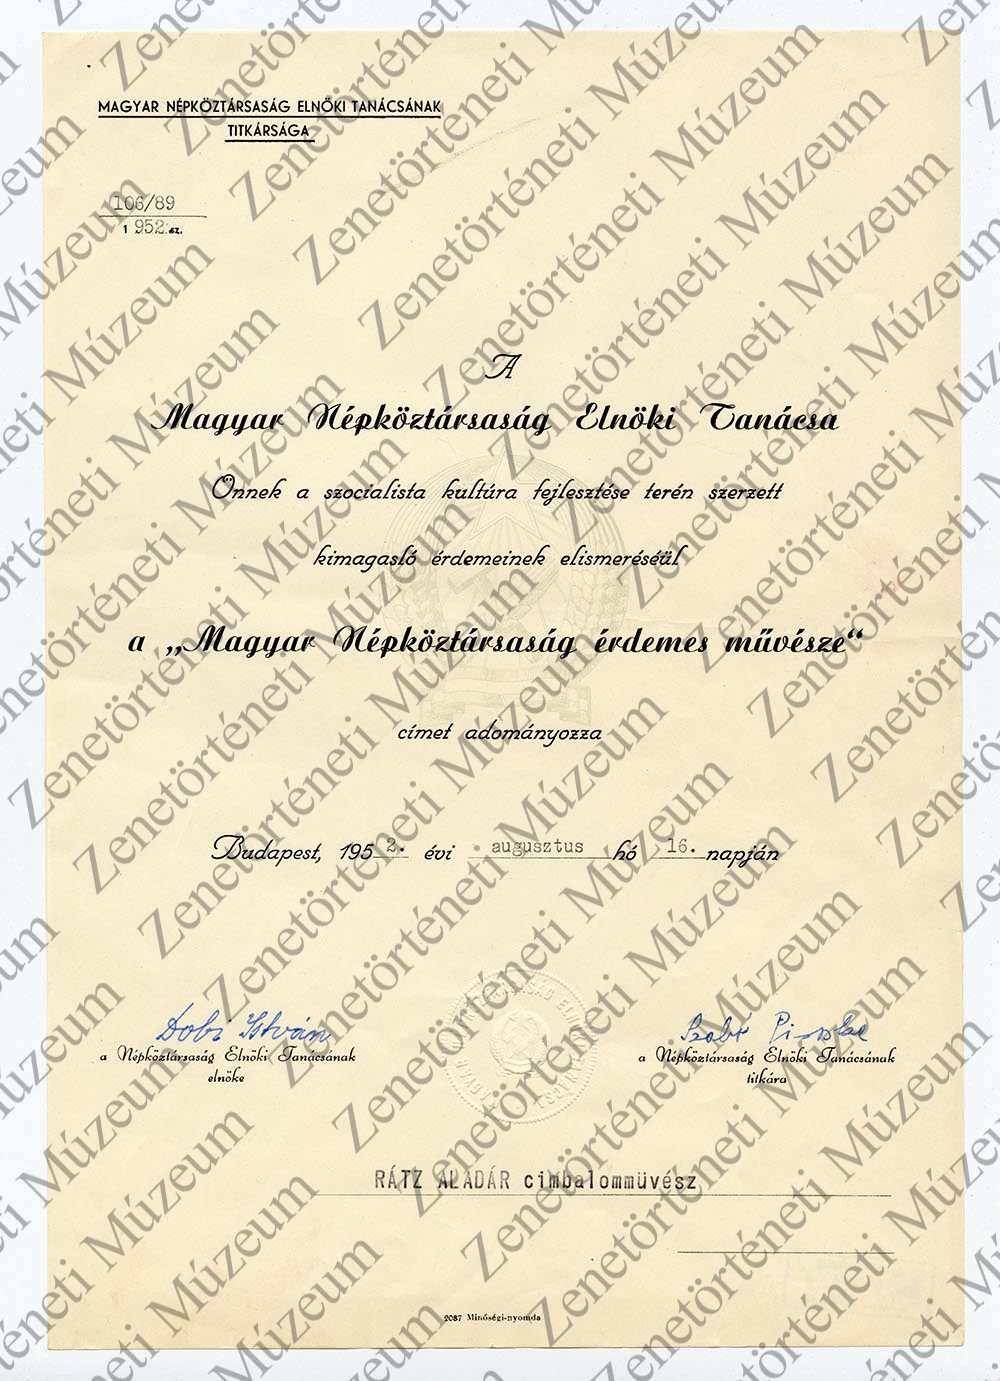 Magyar Népköztársaság Érdemes Művésze kitüntetés Rácz Aladárnak, oklevél 1952 (Zenetörténeti Múzeum CC BY-NC-SA)